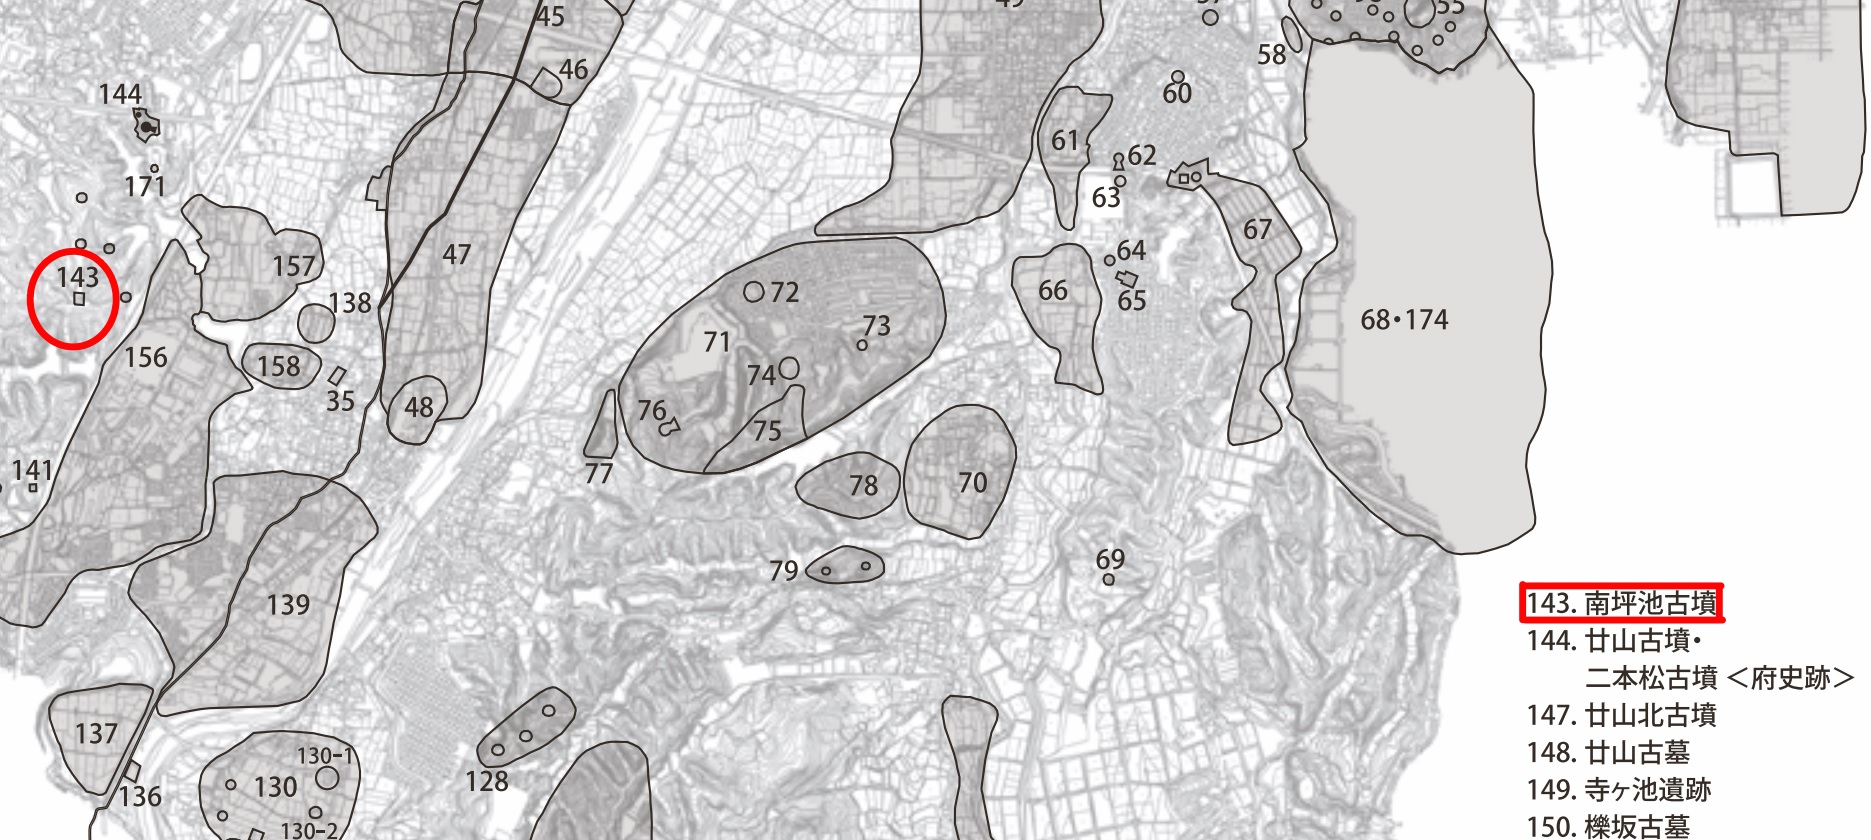 富田林市内遺跡群発掘調査報告書にある市内遺跡分布図の一部抜粋